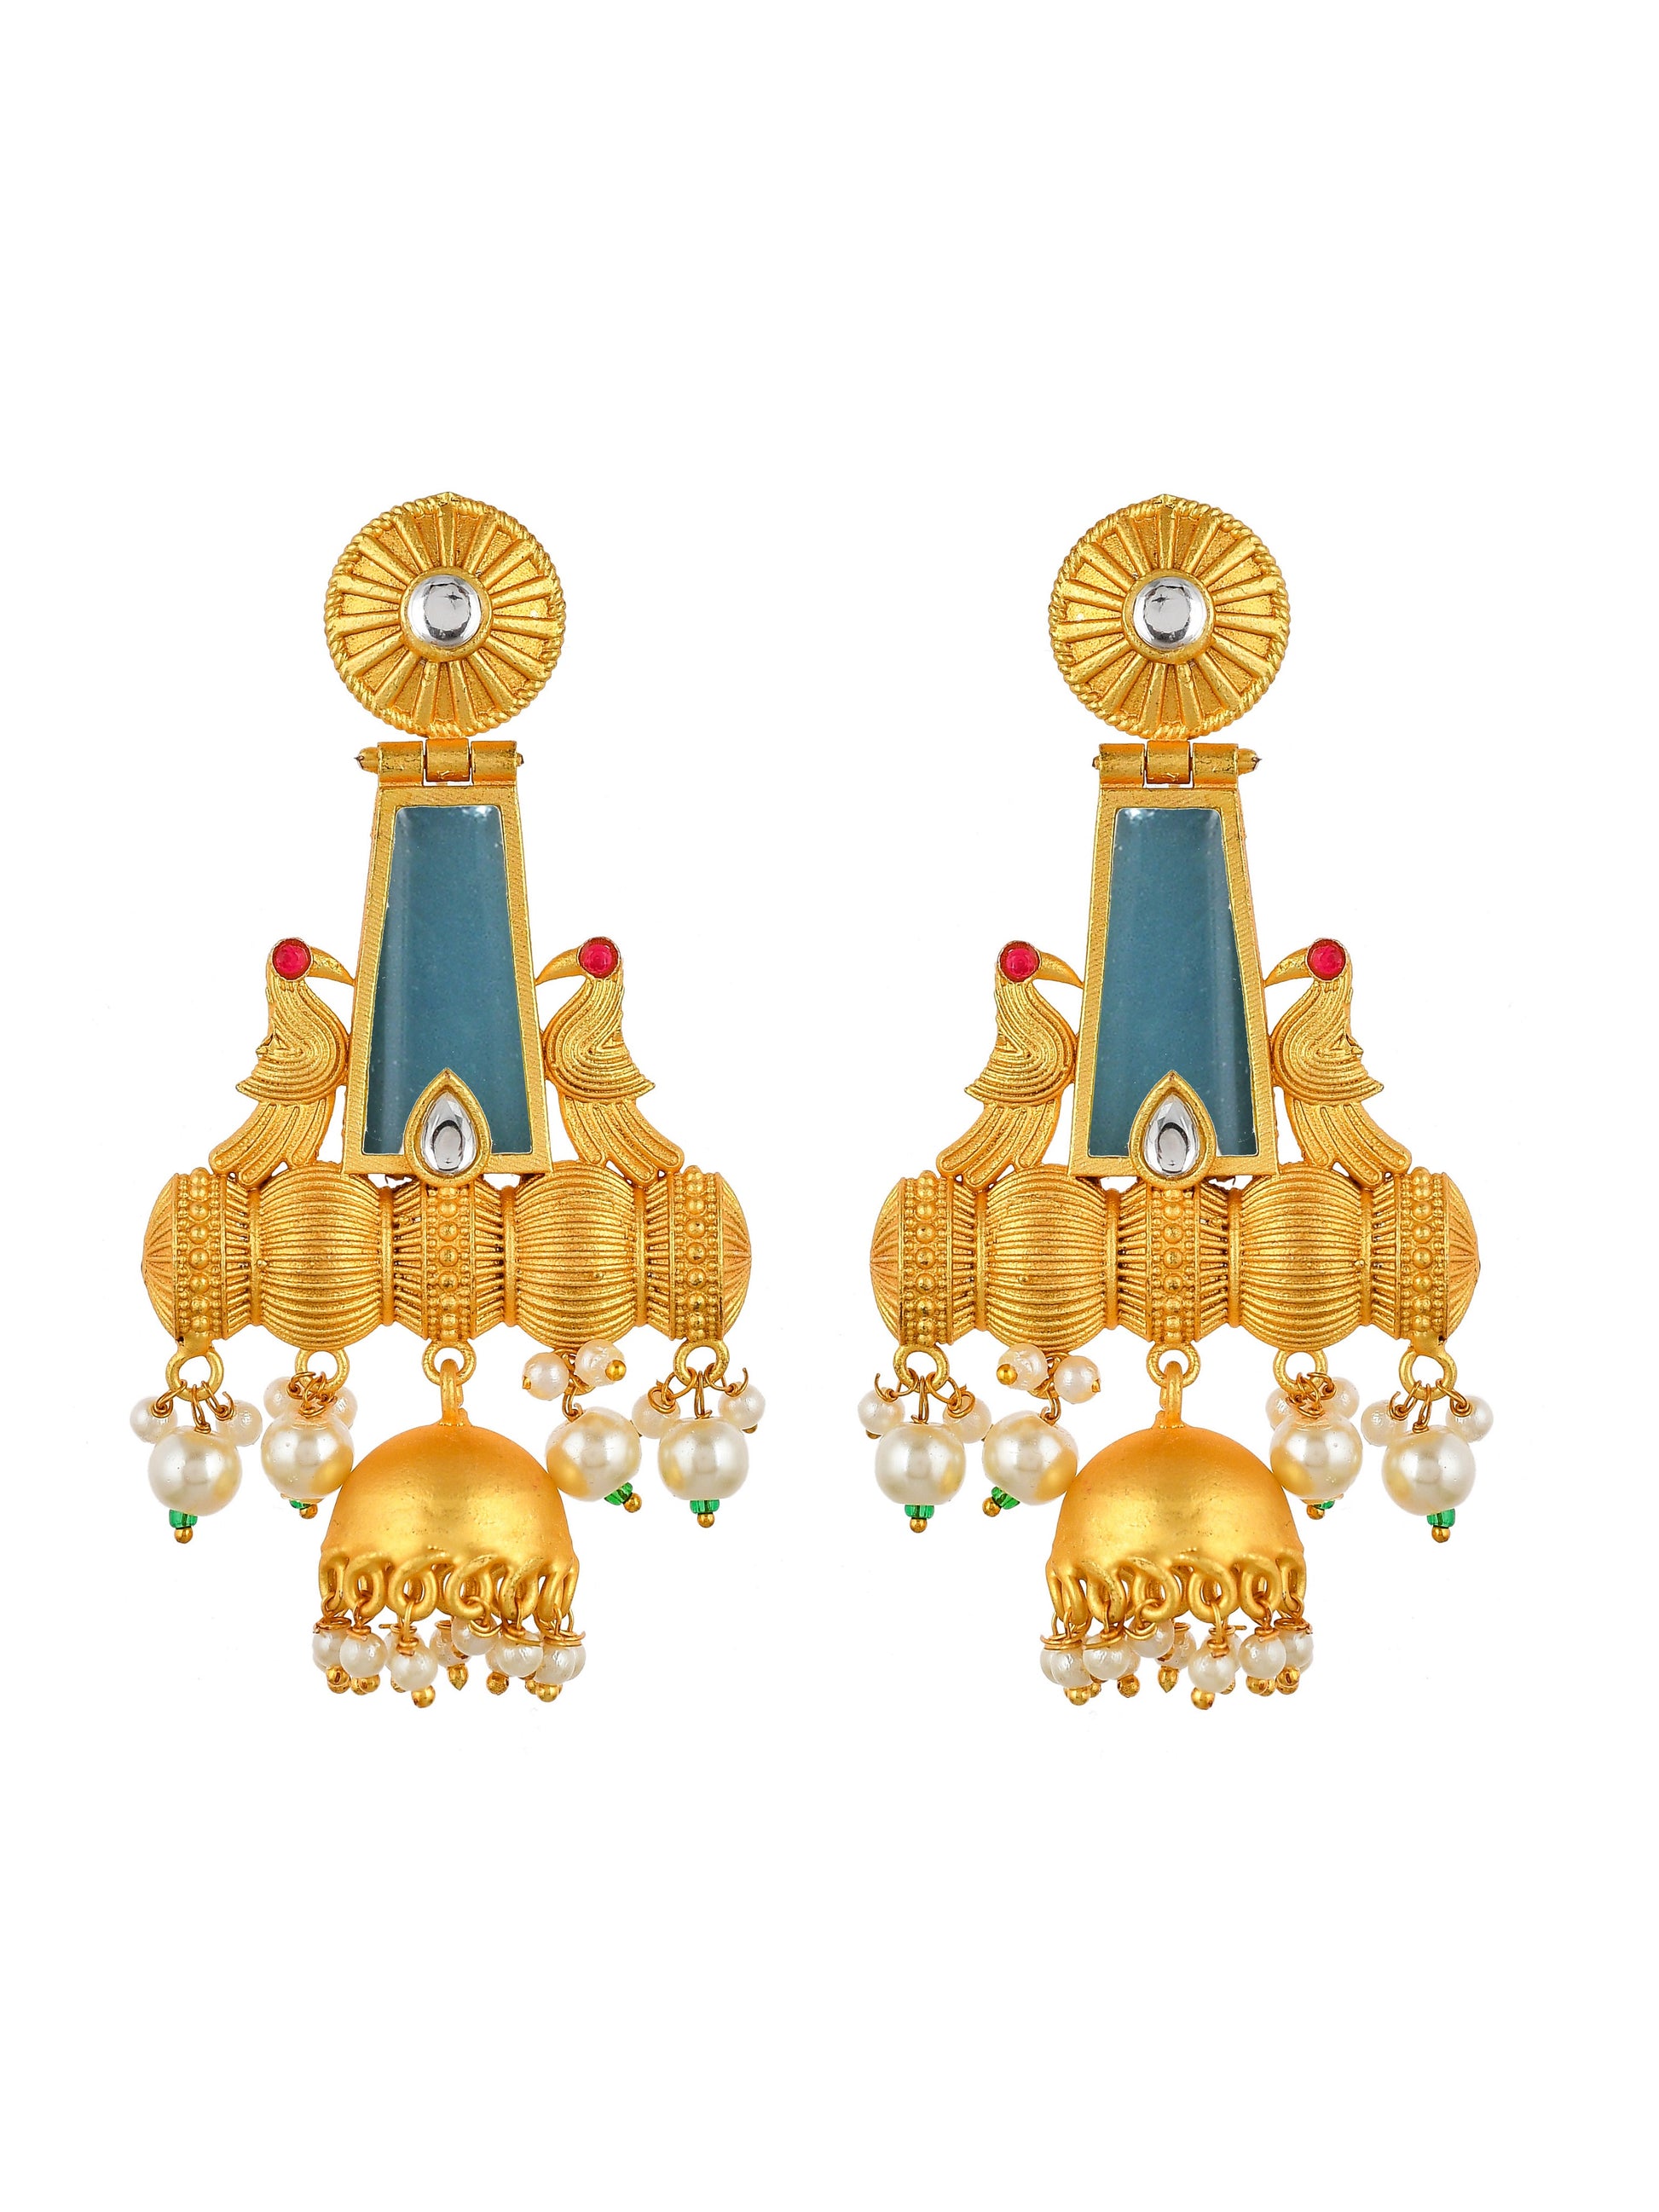 Ethnic Chandbali jhumka earrings